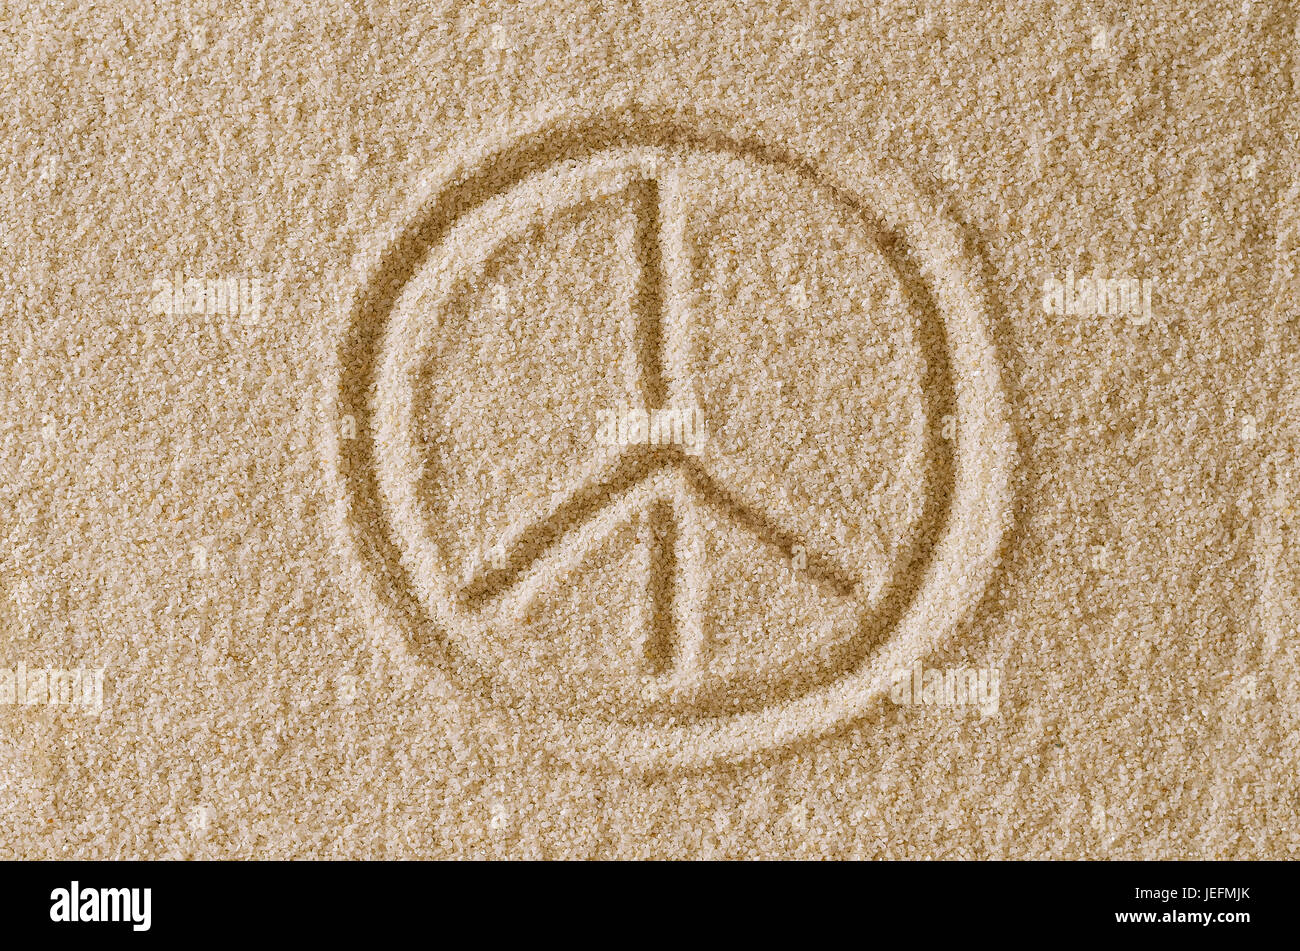 Segno di pace tracciata nella sabbia. Impronta e la forma del simbolo di pace in ocra dei granelli di sabbia. Anche un simbolo per antiwar, amore e controcultura. Foto Stock